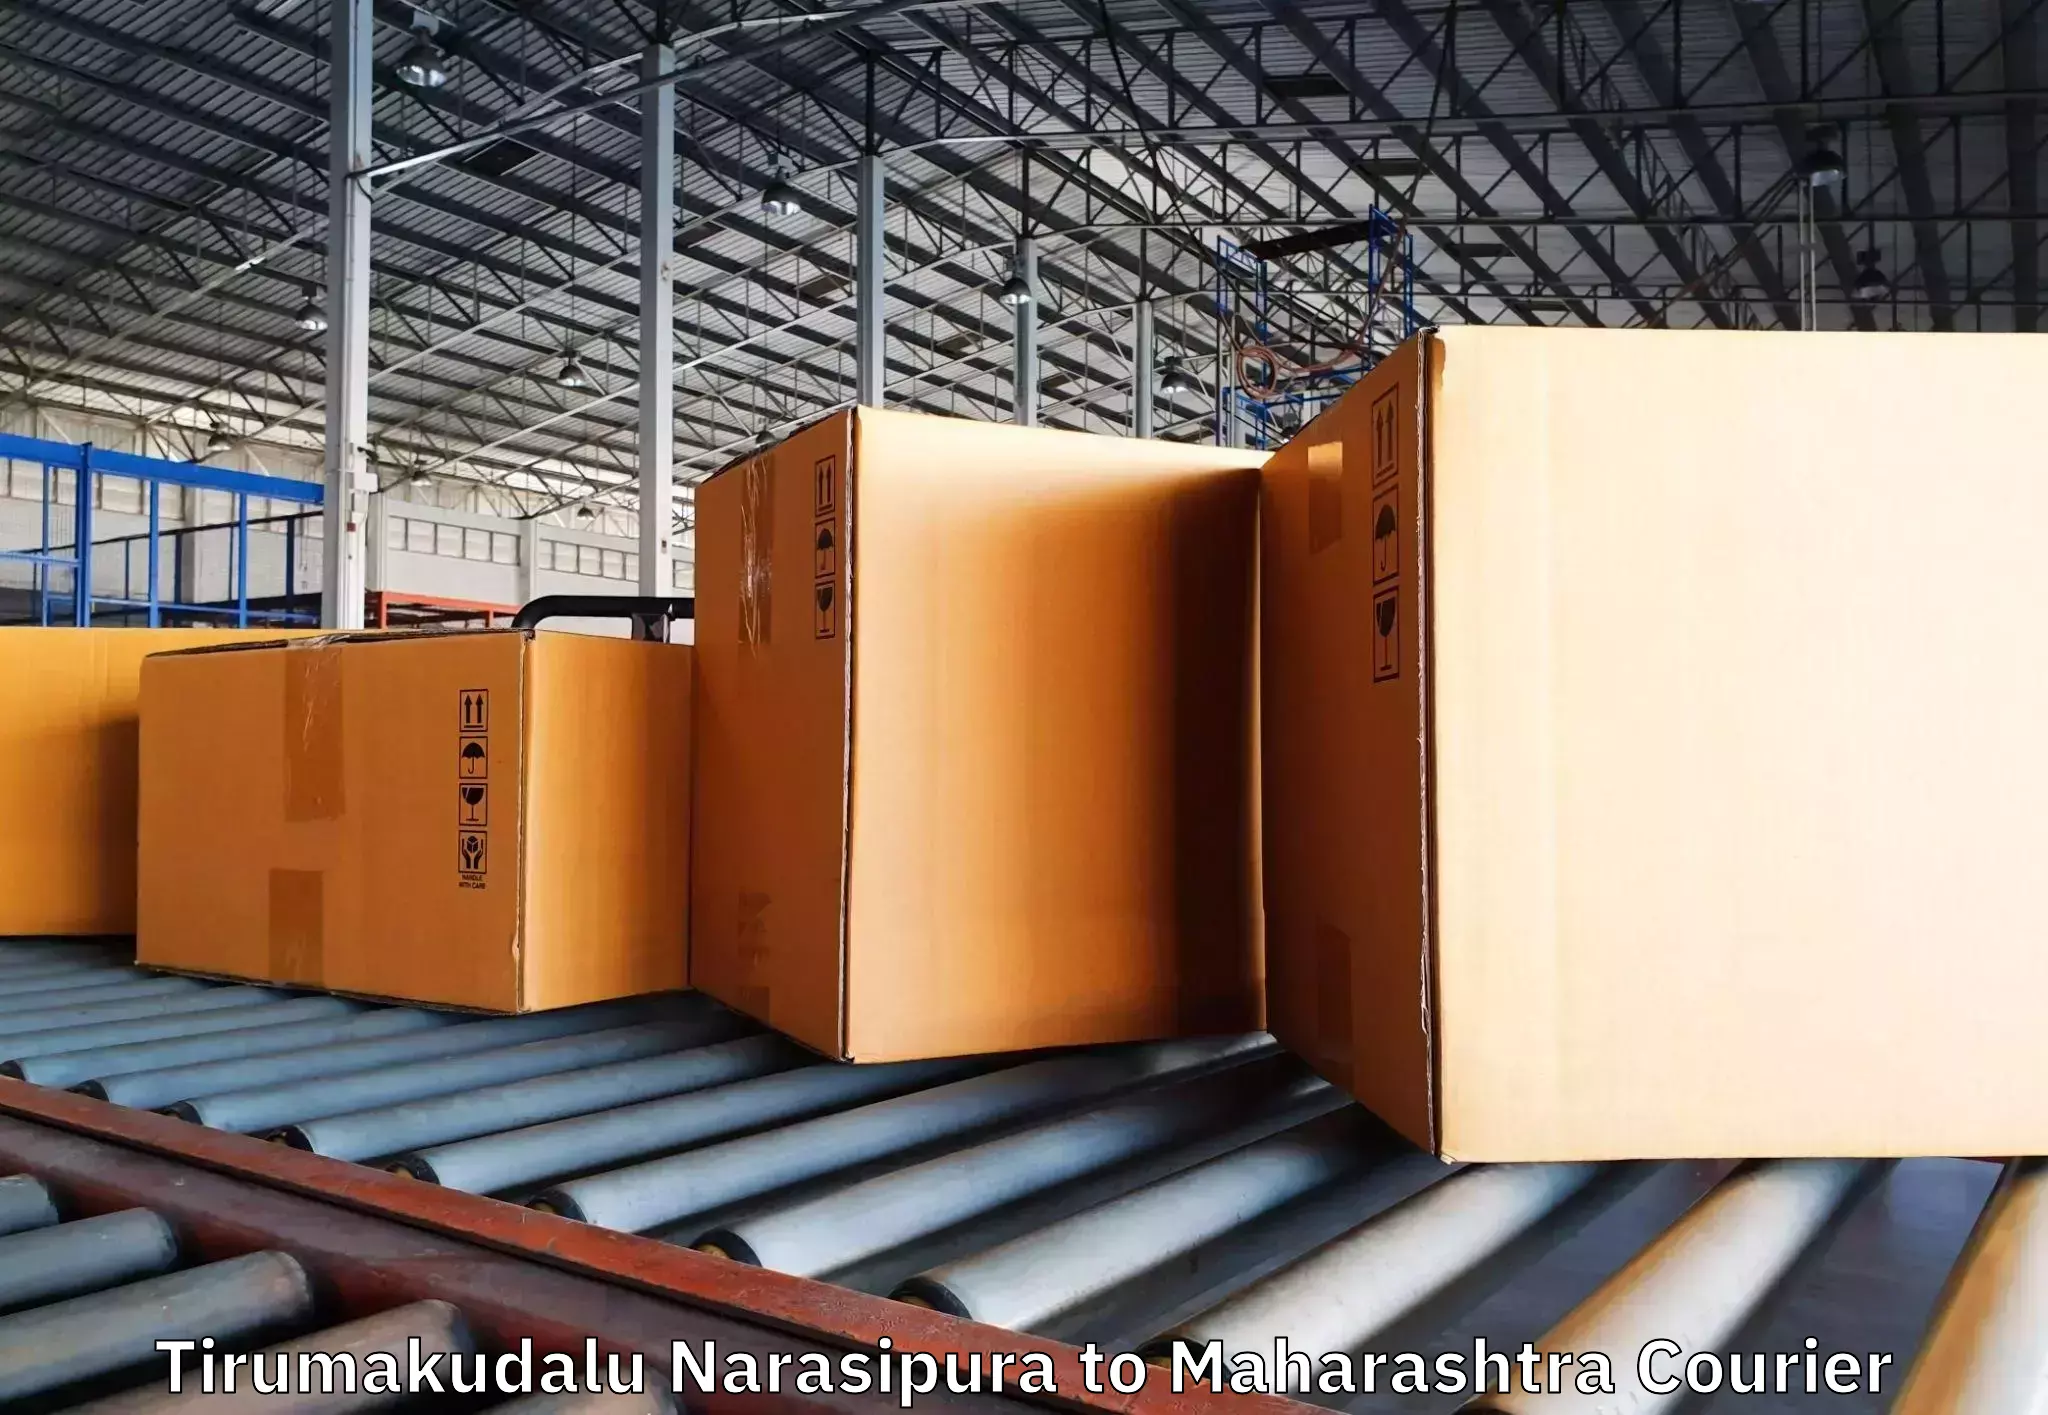 Reliable furniture transport in Tirumakudalu Narasipura to Shindkheda